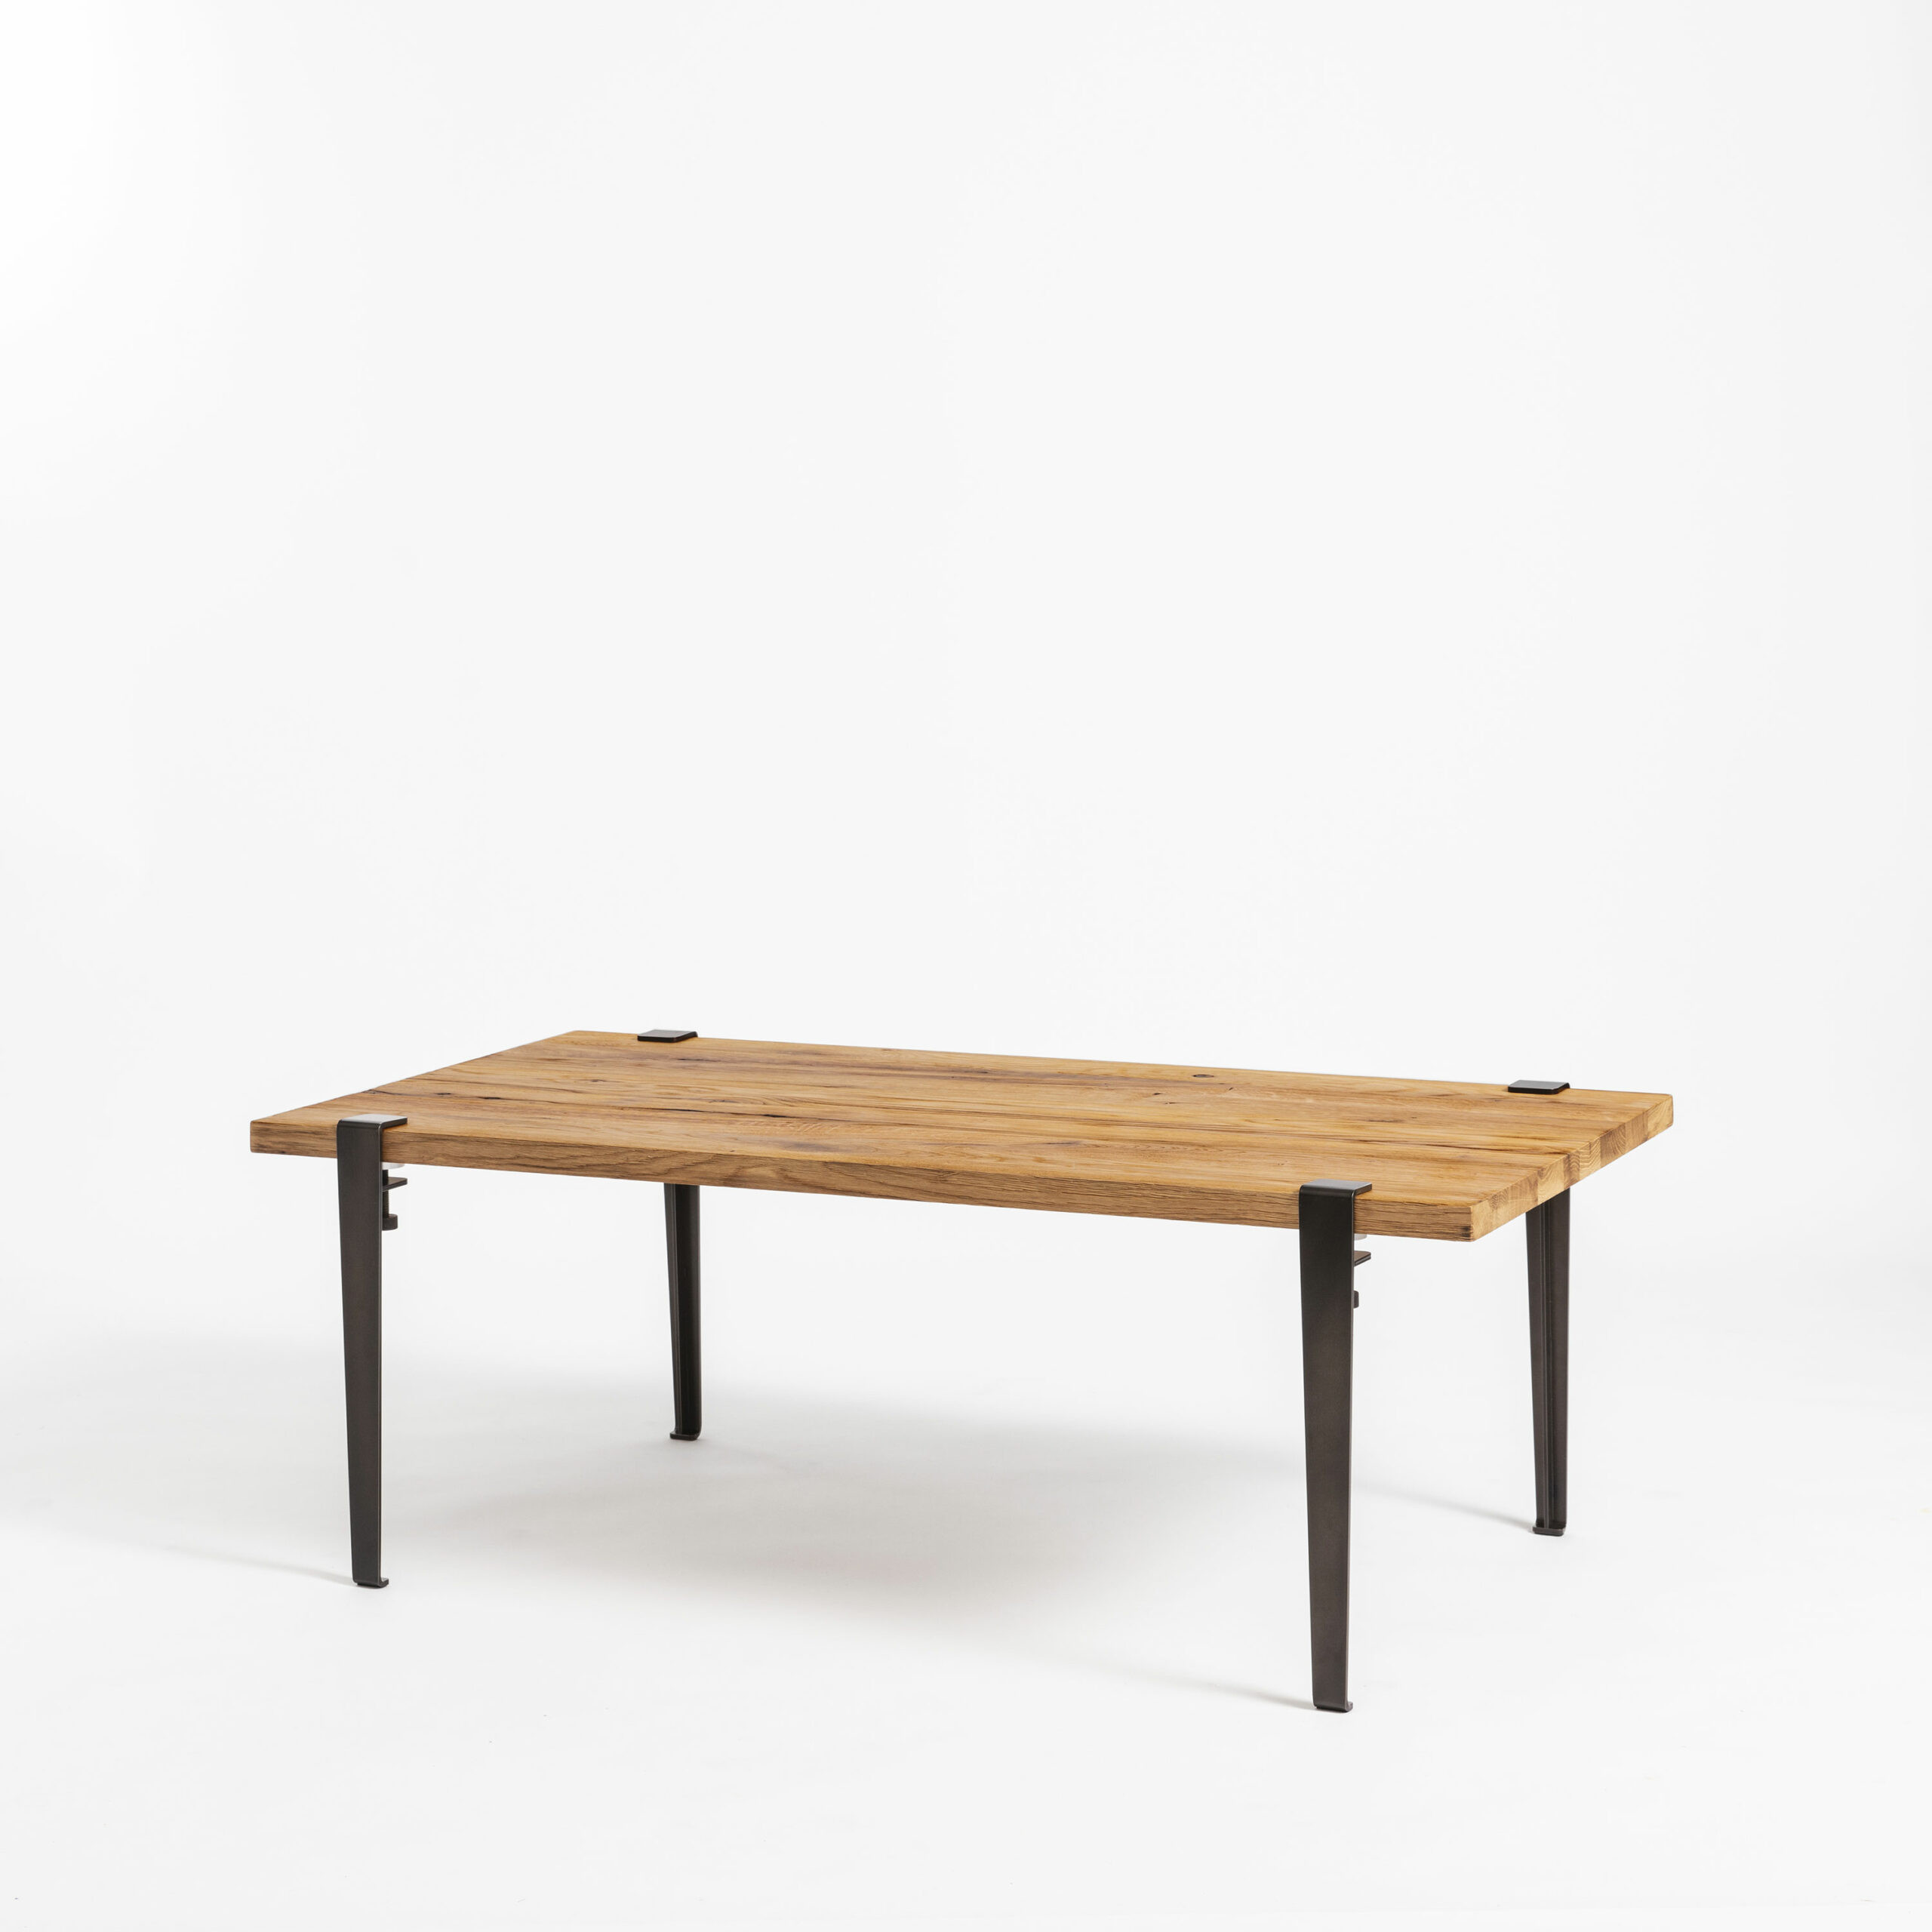 Table basse en bois ancien recyclé avec pieds acier pour salon